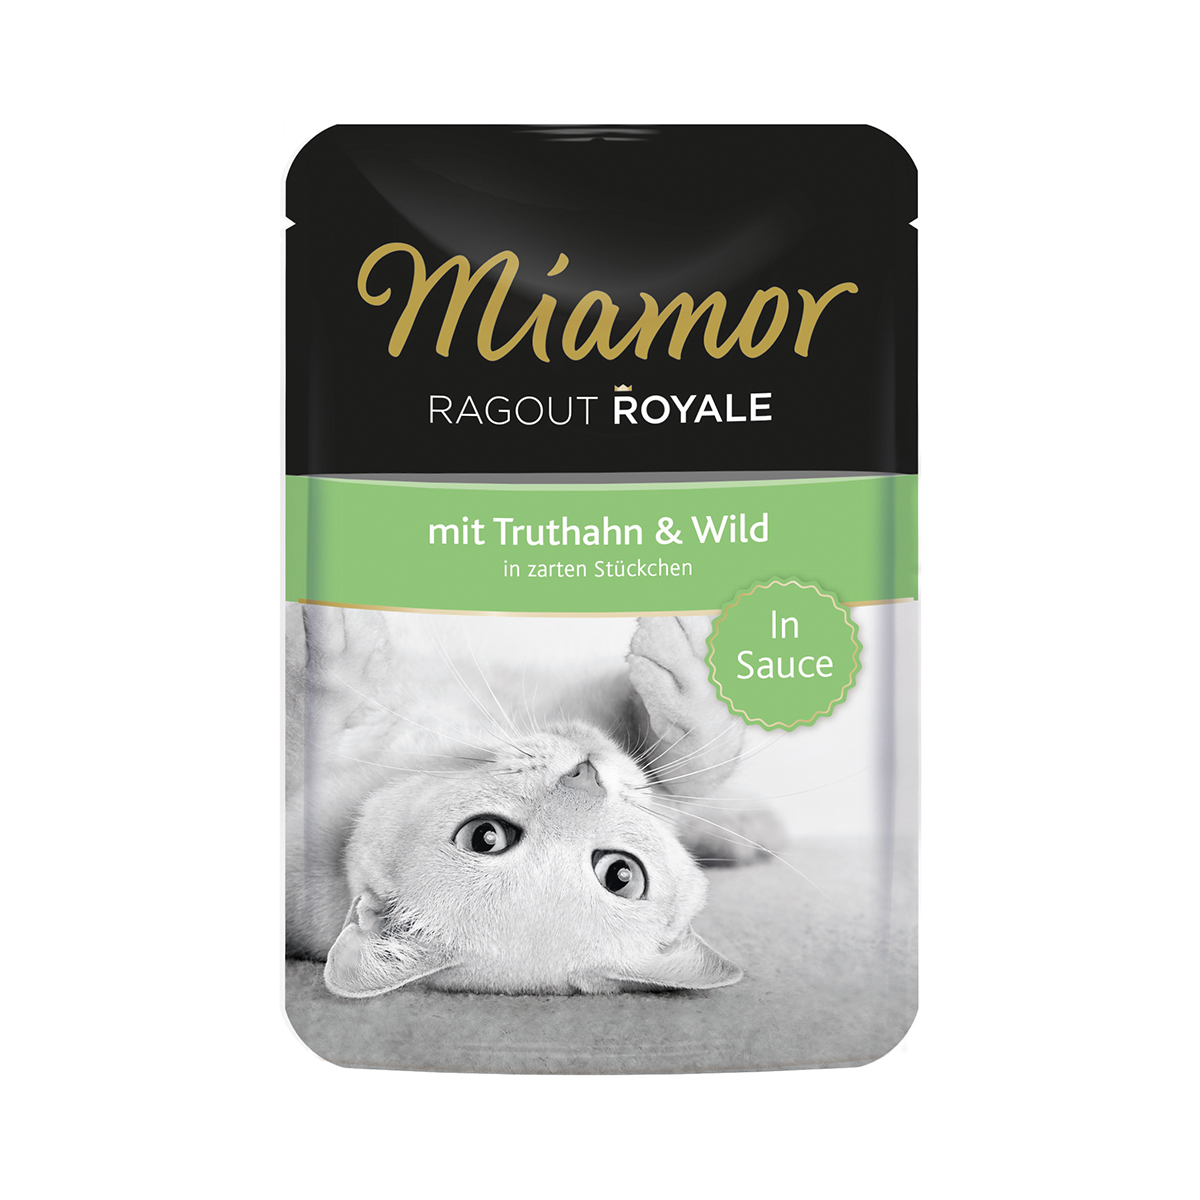 Miamor Ragout Royale in Sauce Truthahn und Wild 44x100g